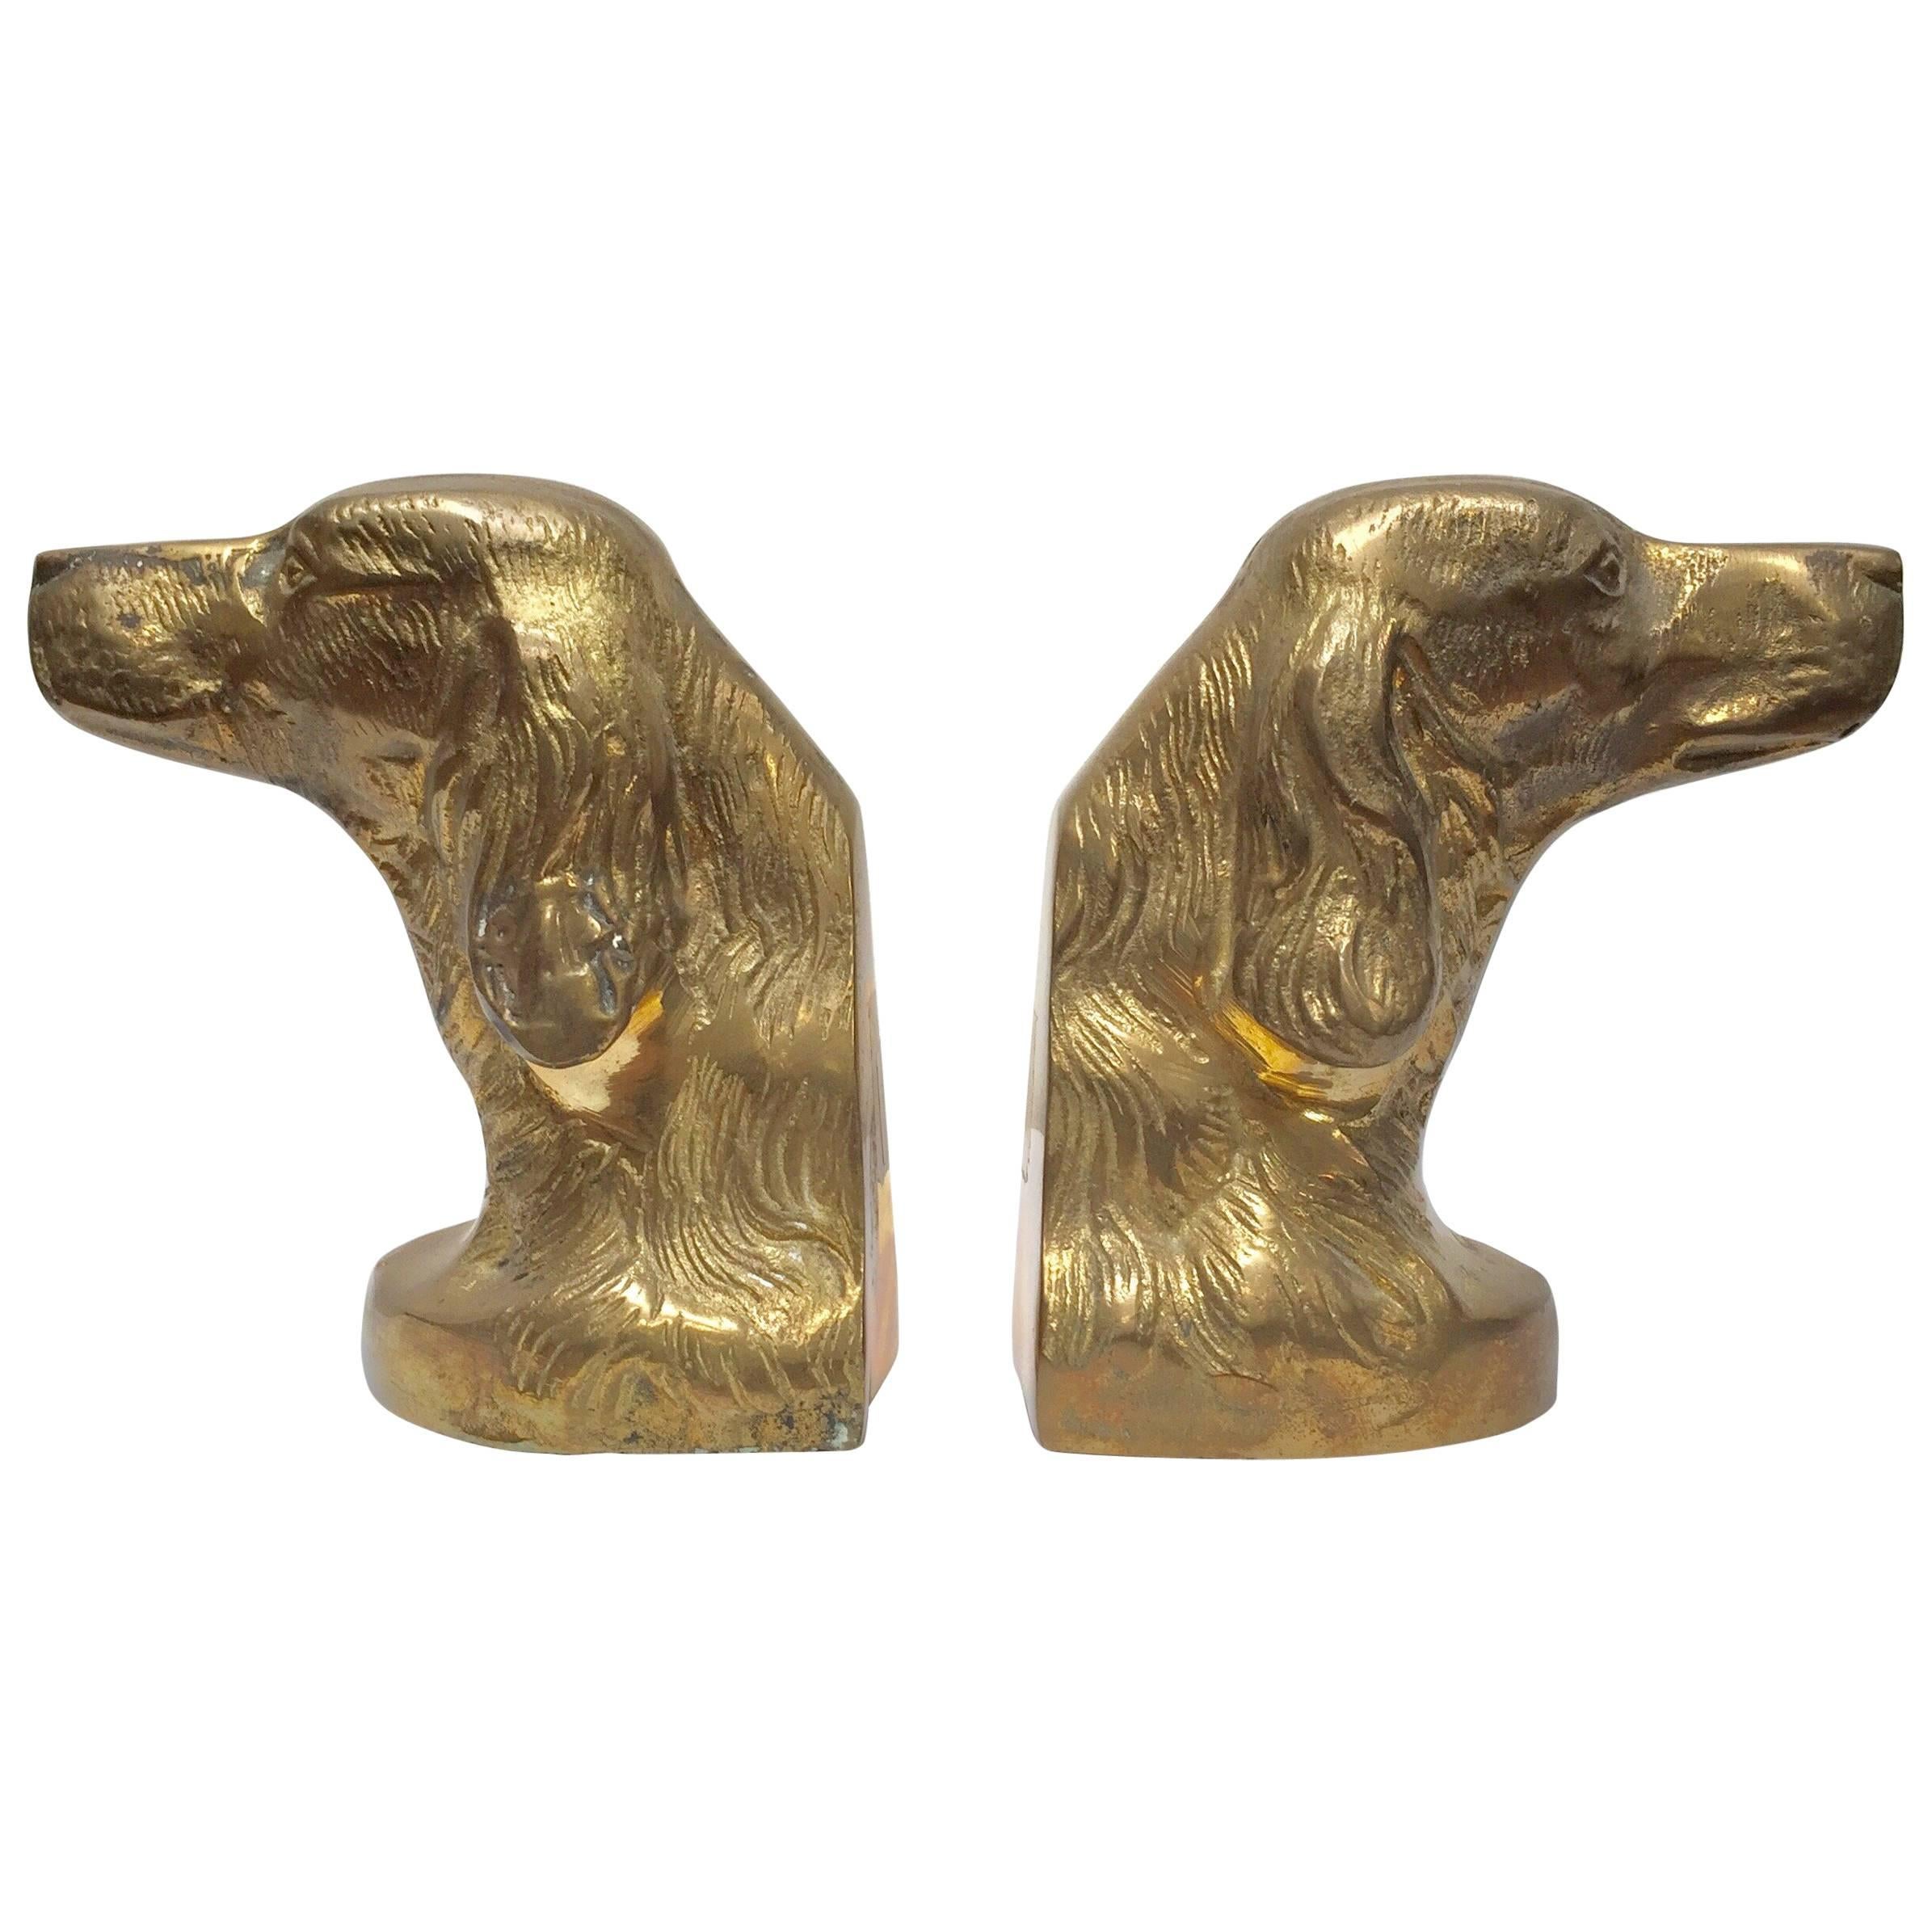 Set of Vintage Cast Brass Sculpture of Beagle Dog Bust Bookends